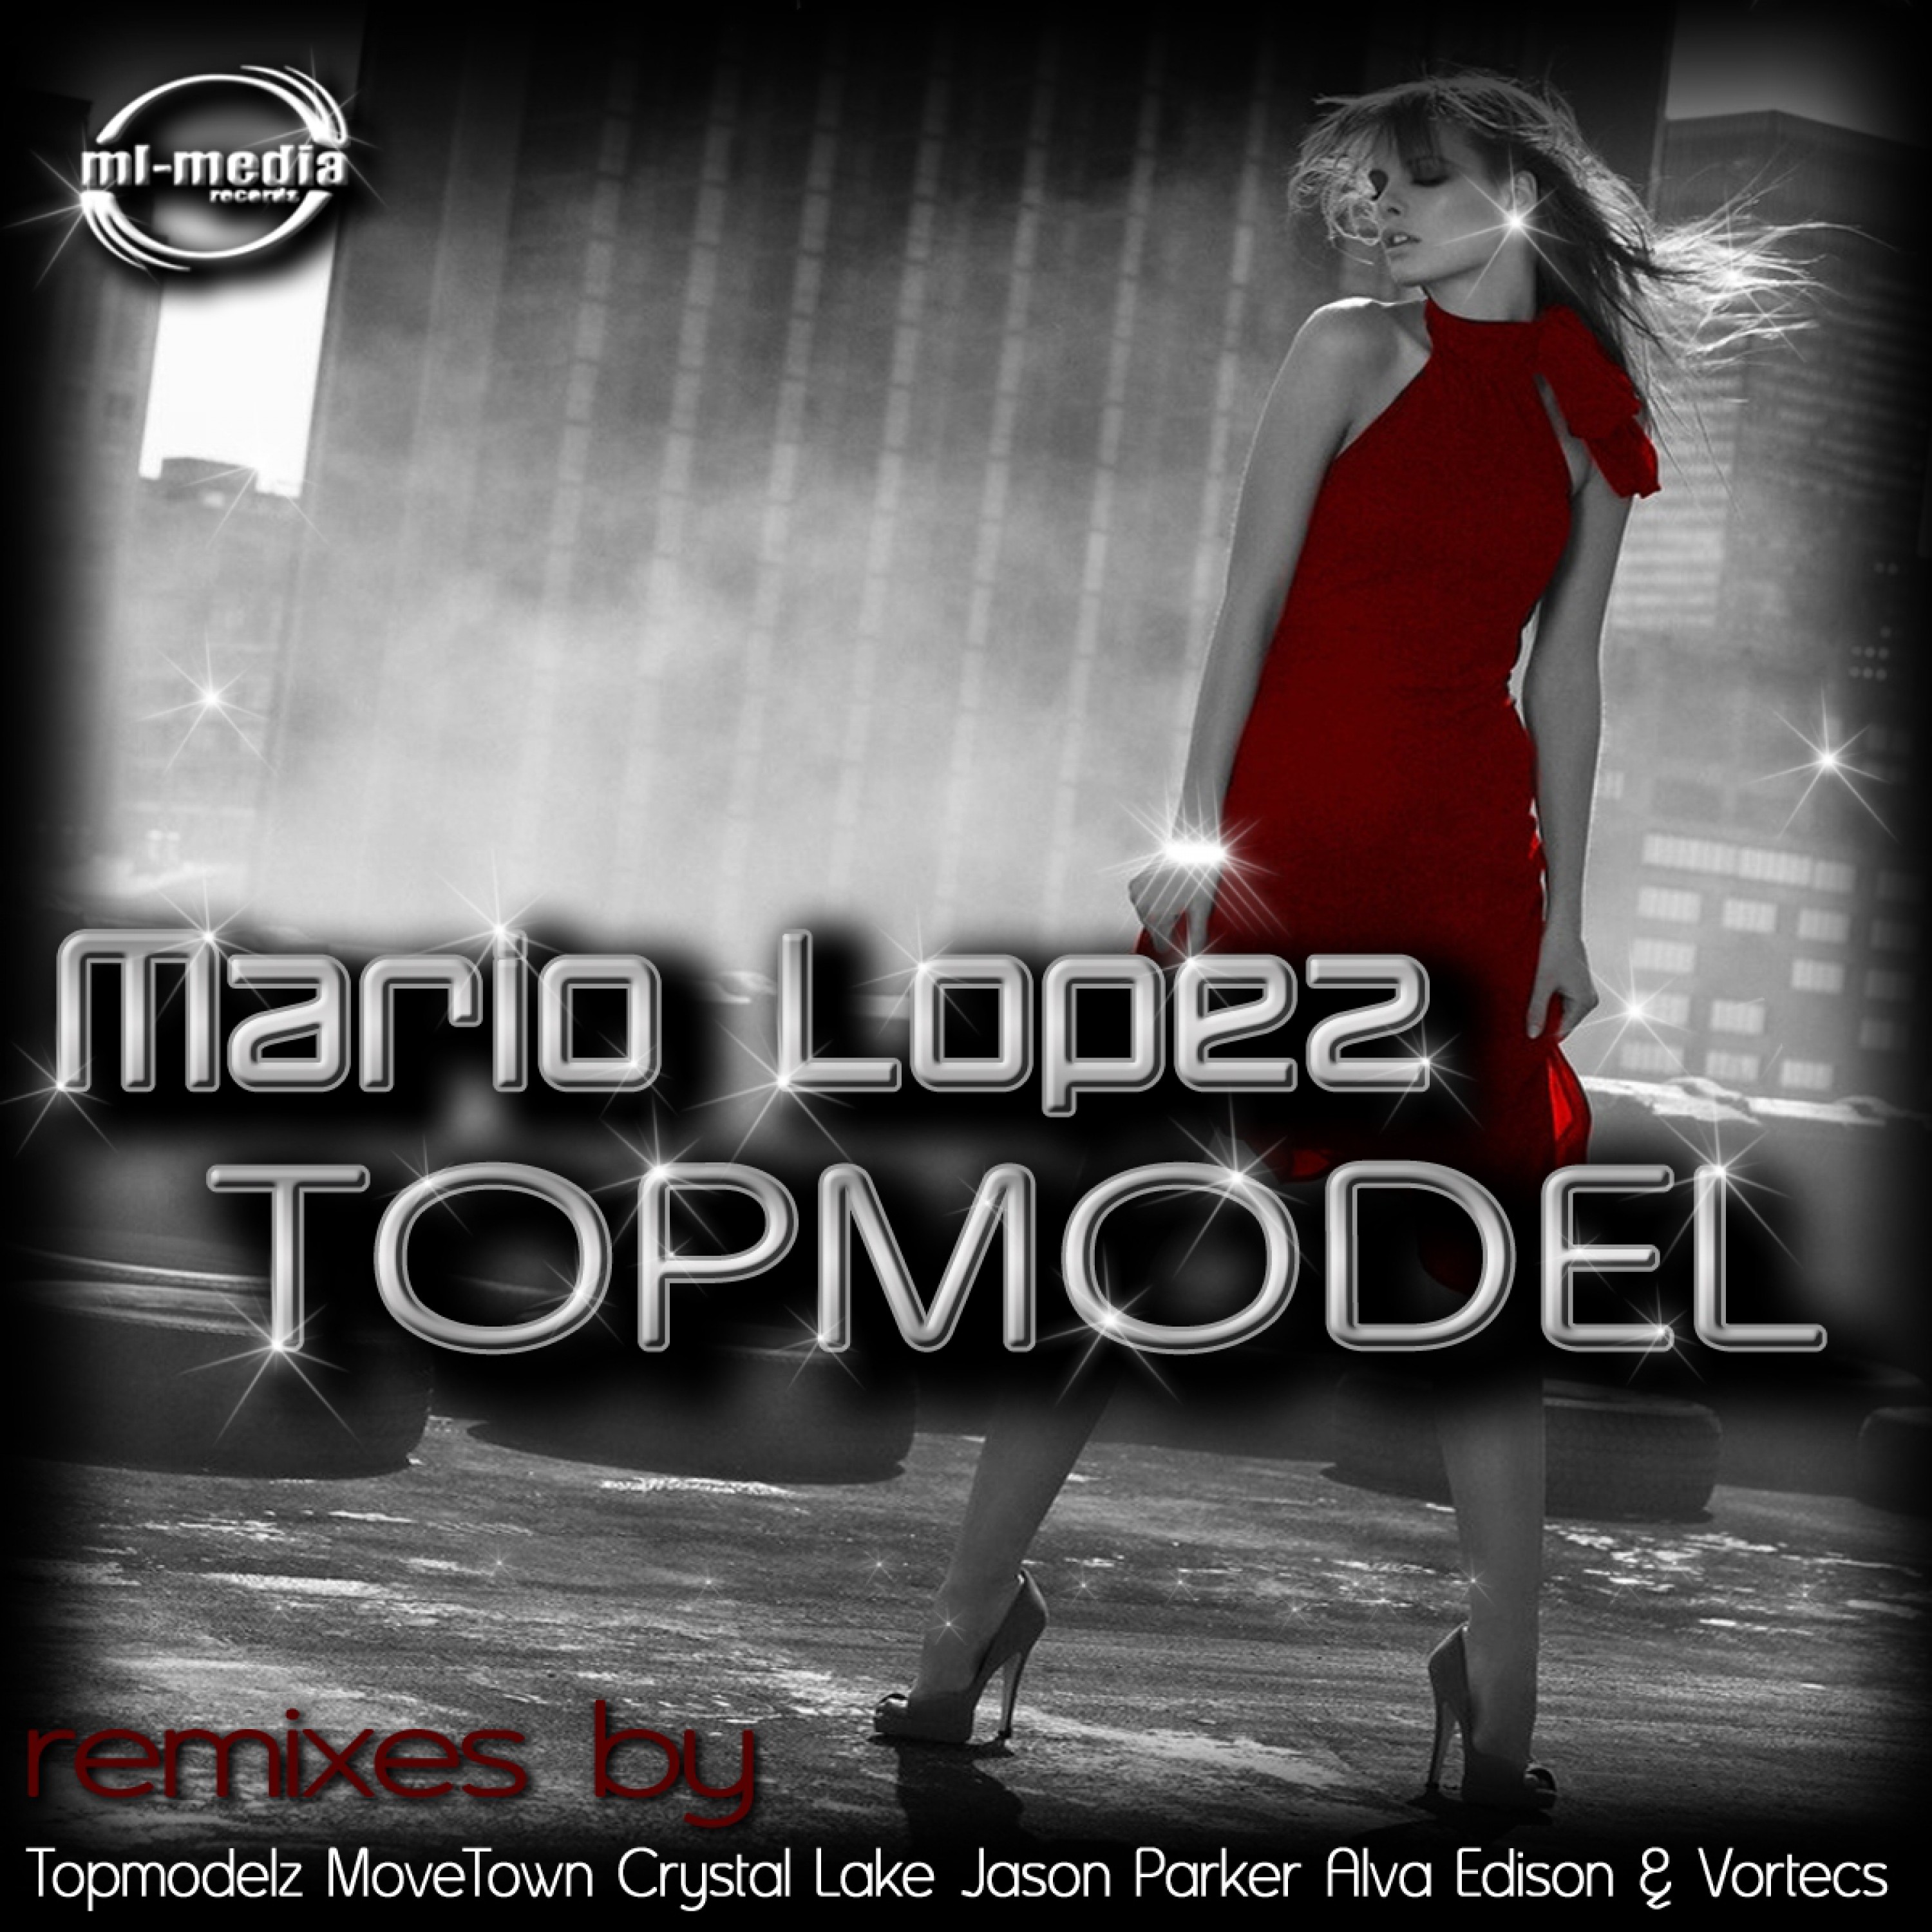 Topmodel (Vortecs Club Remix)